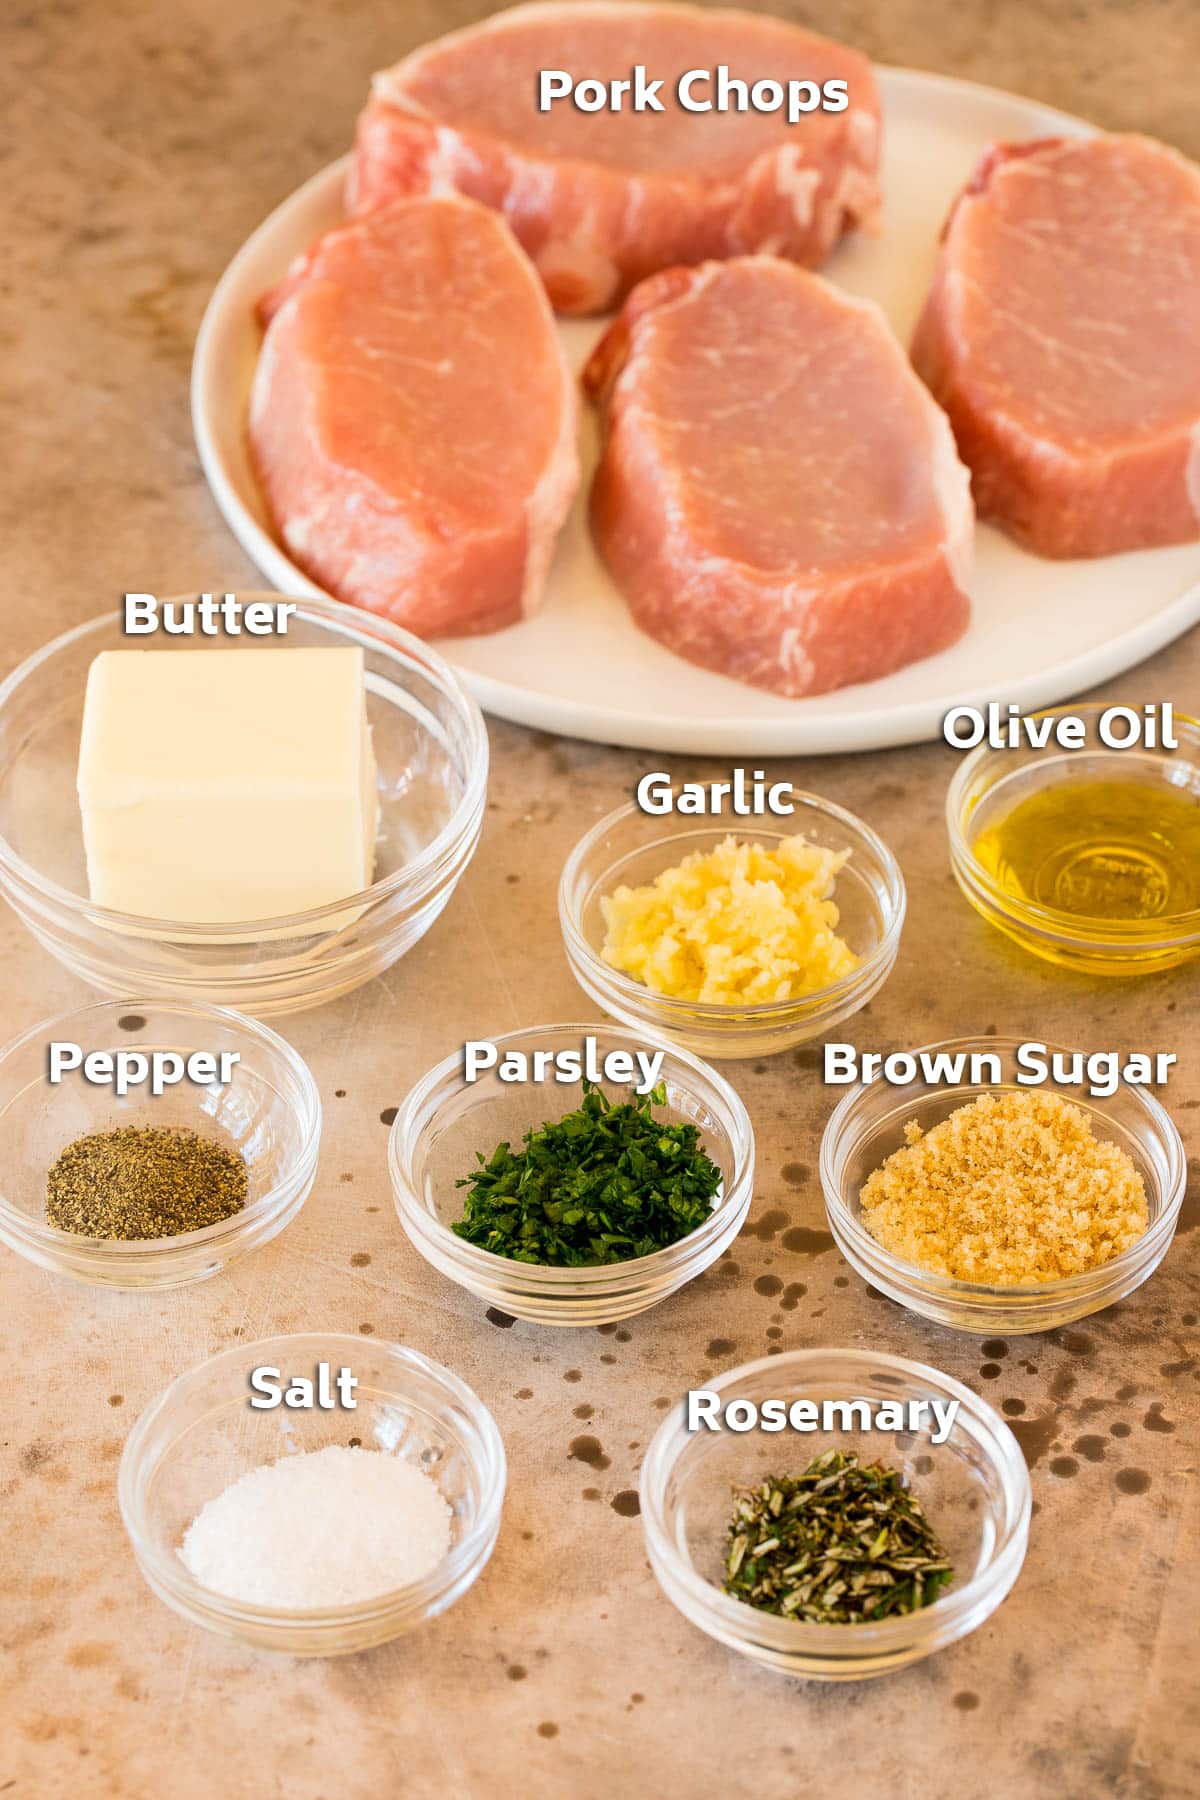 Ingredients including pork chops, garlic, butter, herbs and seasonings.